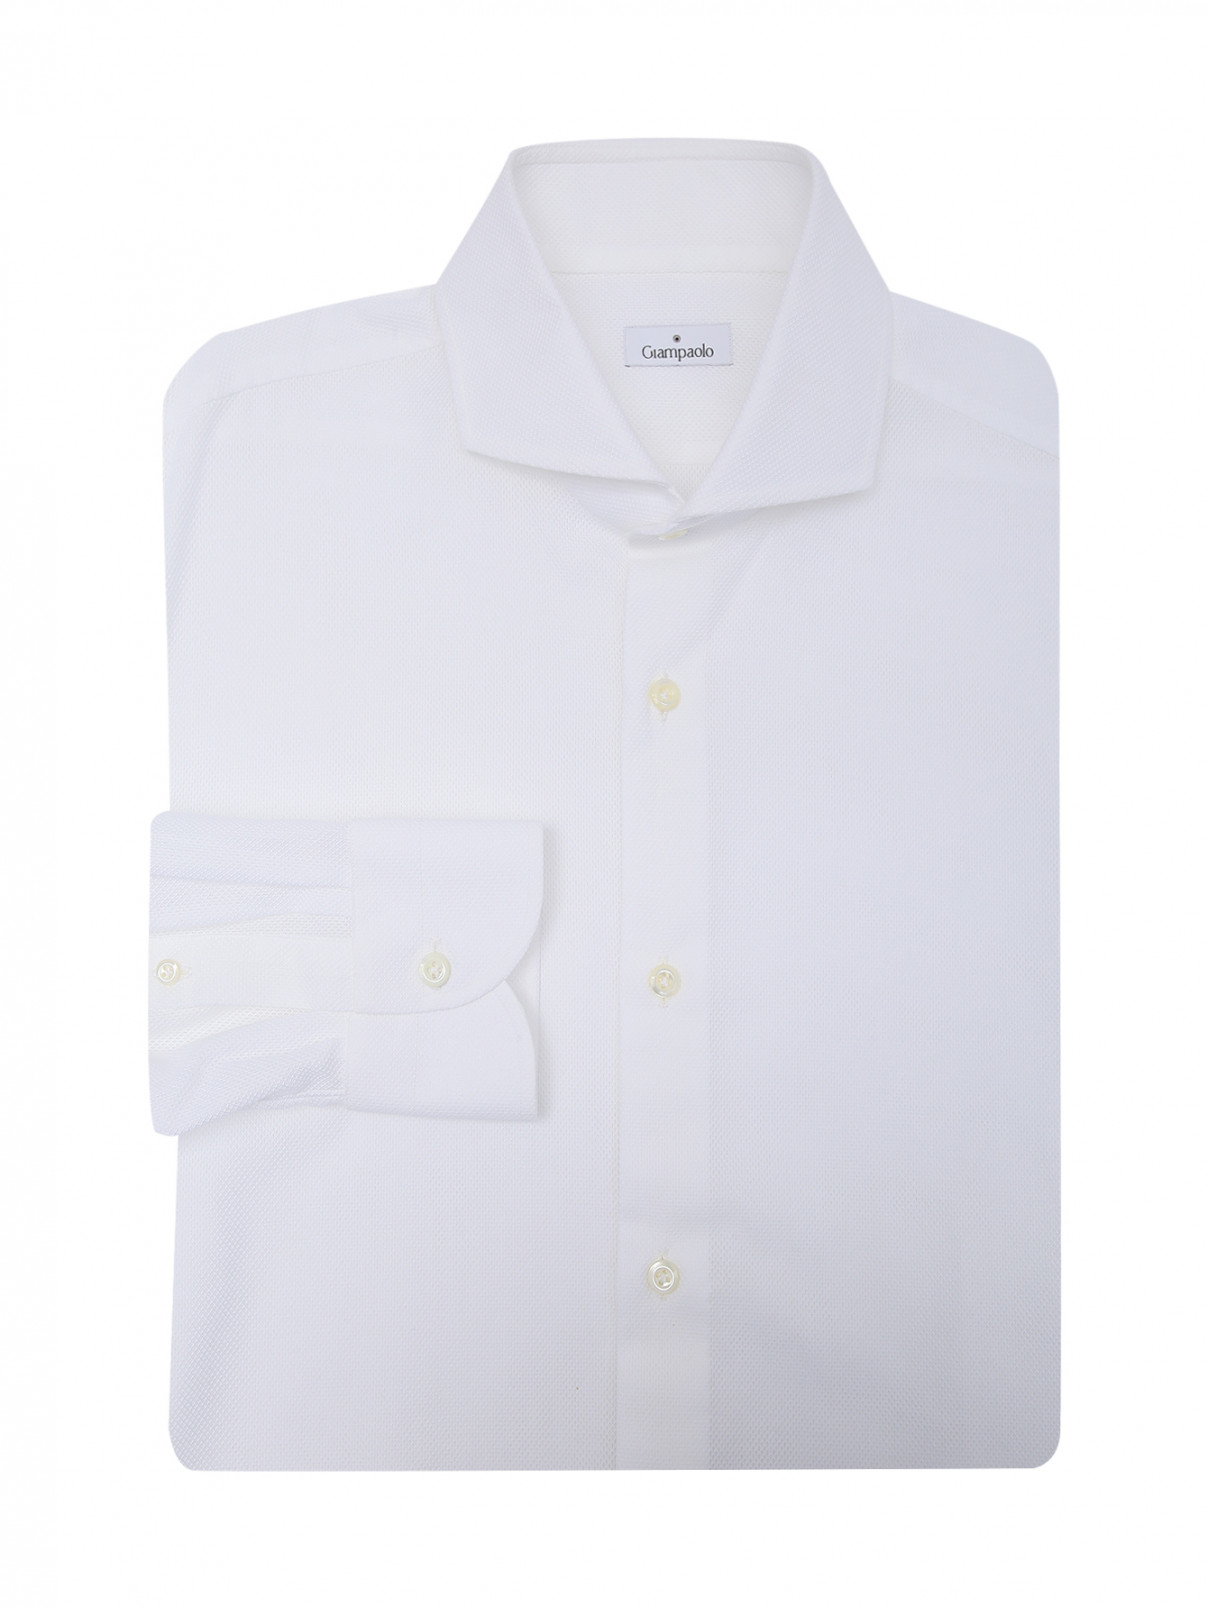 Рубашка из хлопка на пуговицах Giampaolo  –  Общий вид  – Цвет:  Белый